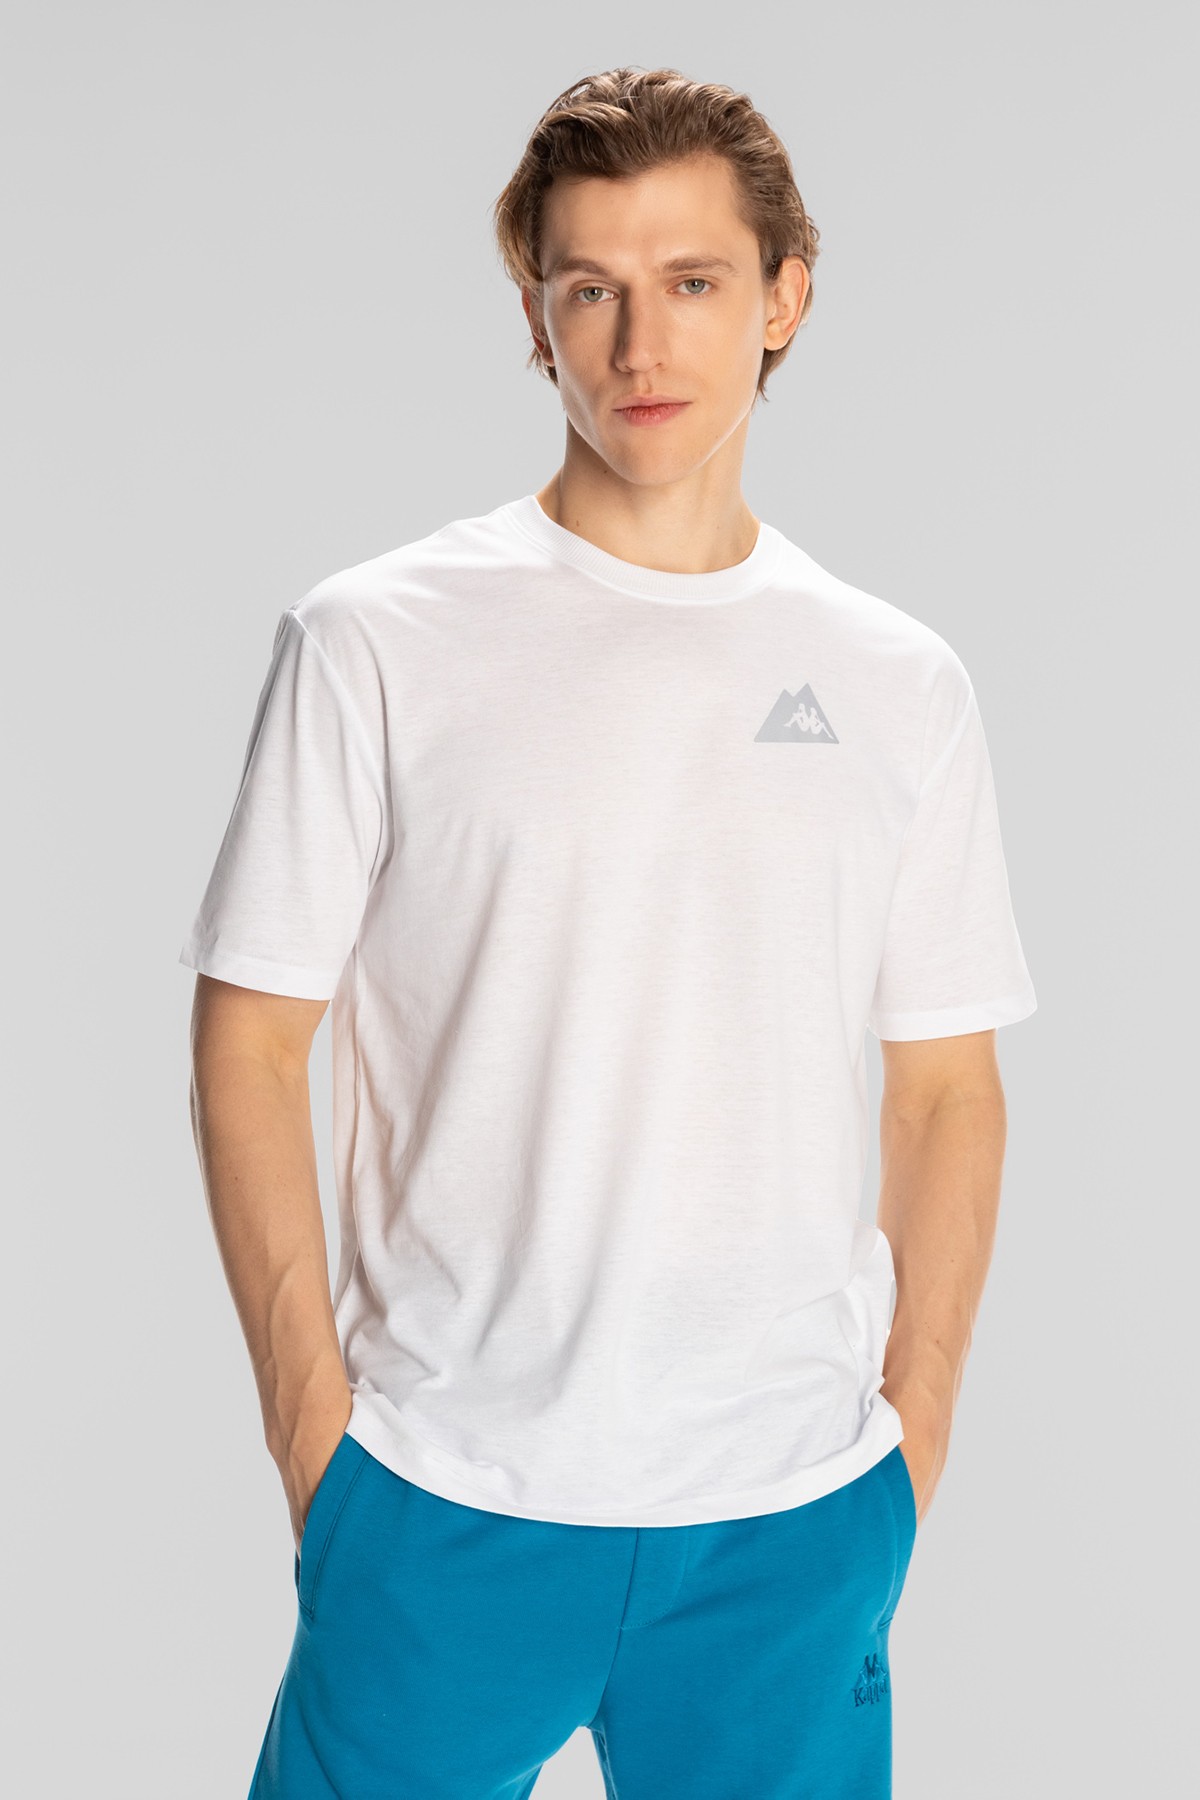 Kappa Kunio 321X71W Erkek T-Shirt - White